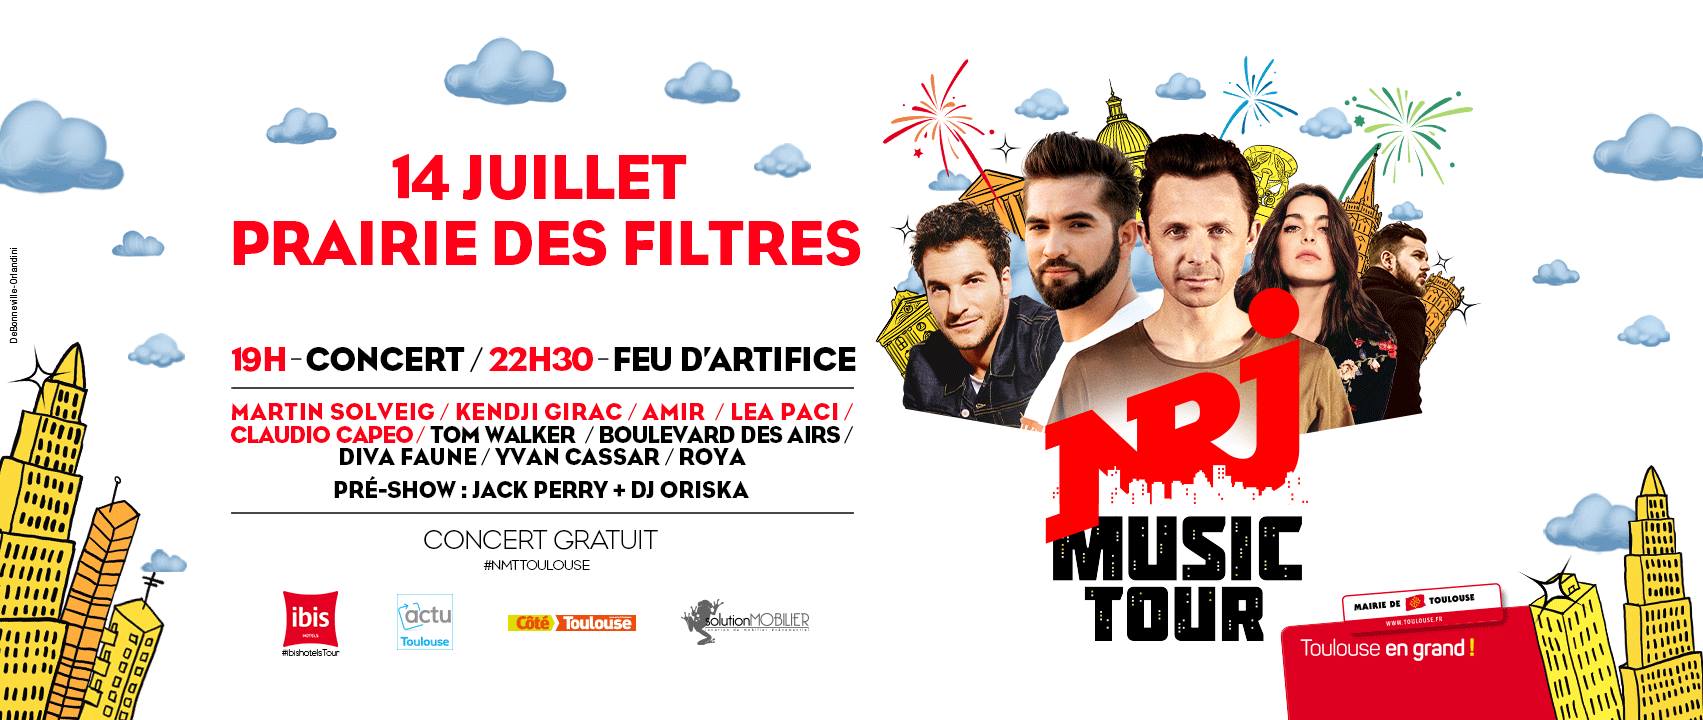 Le NRJ Music Tour fait étape à Toulouse ce 14 juillet